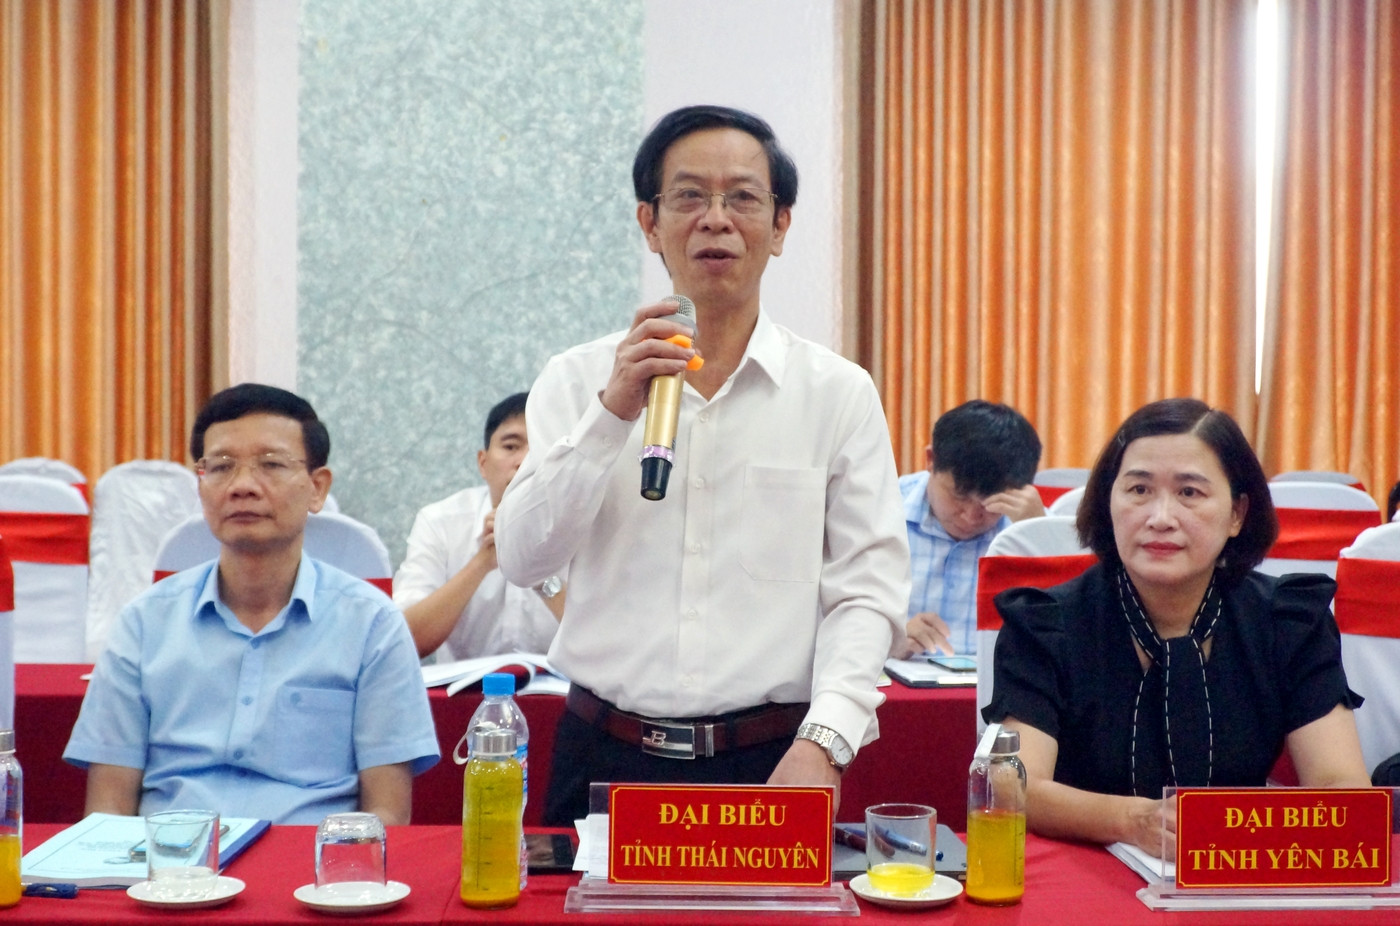 Ông Đàm Quang Tuyến, Phó Chủ tịch Ủy ban MTTQ tỉnh Thái Nguyên phát biểu tại hội nghị.